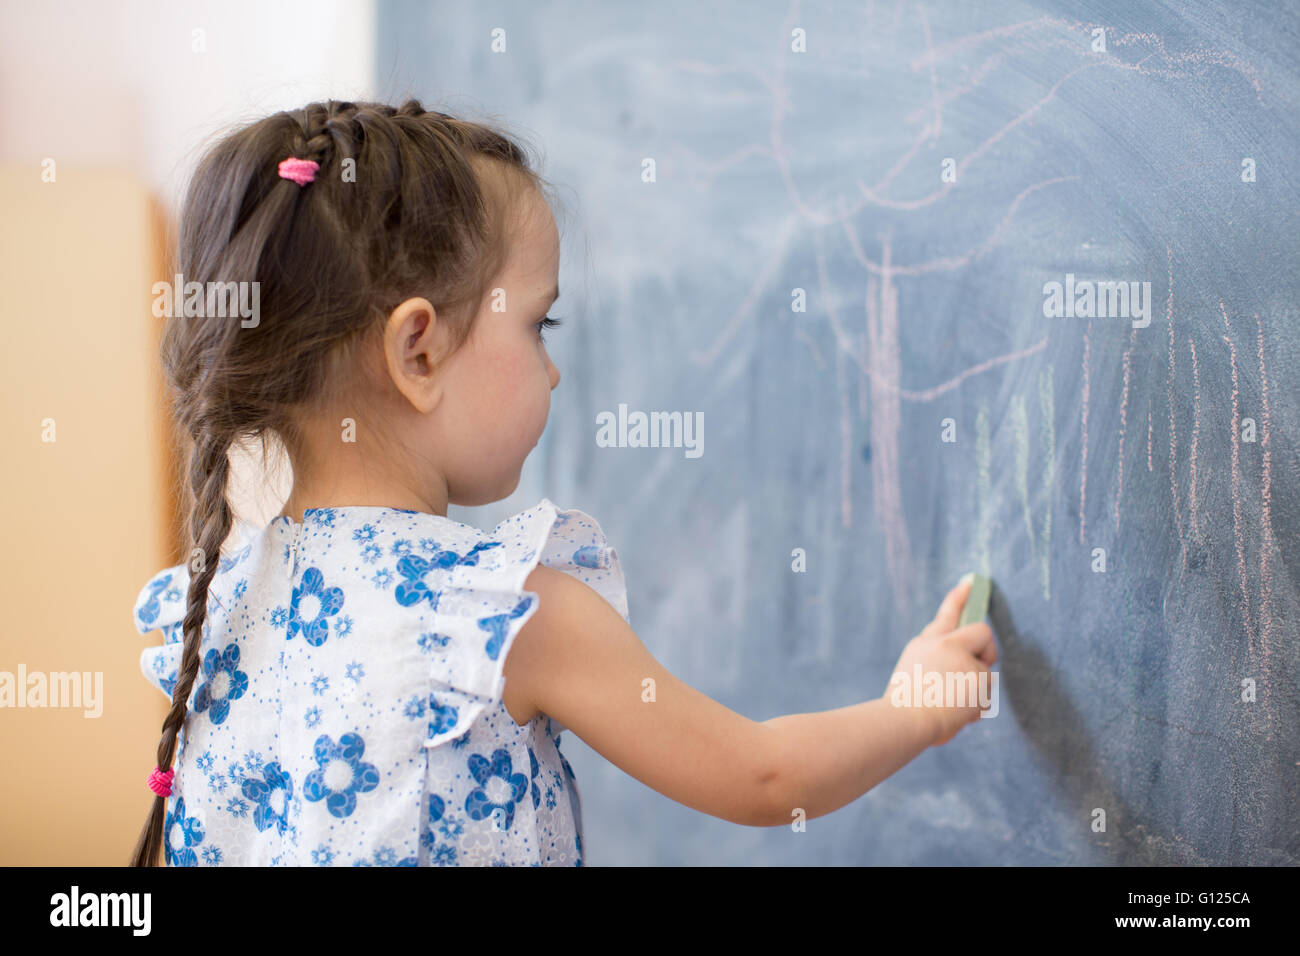 little girl side view near blackboard Stock Photo